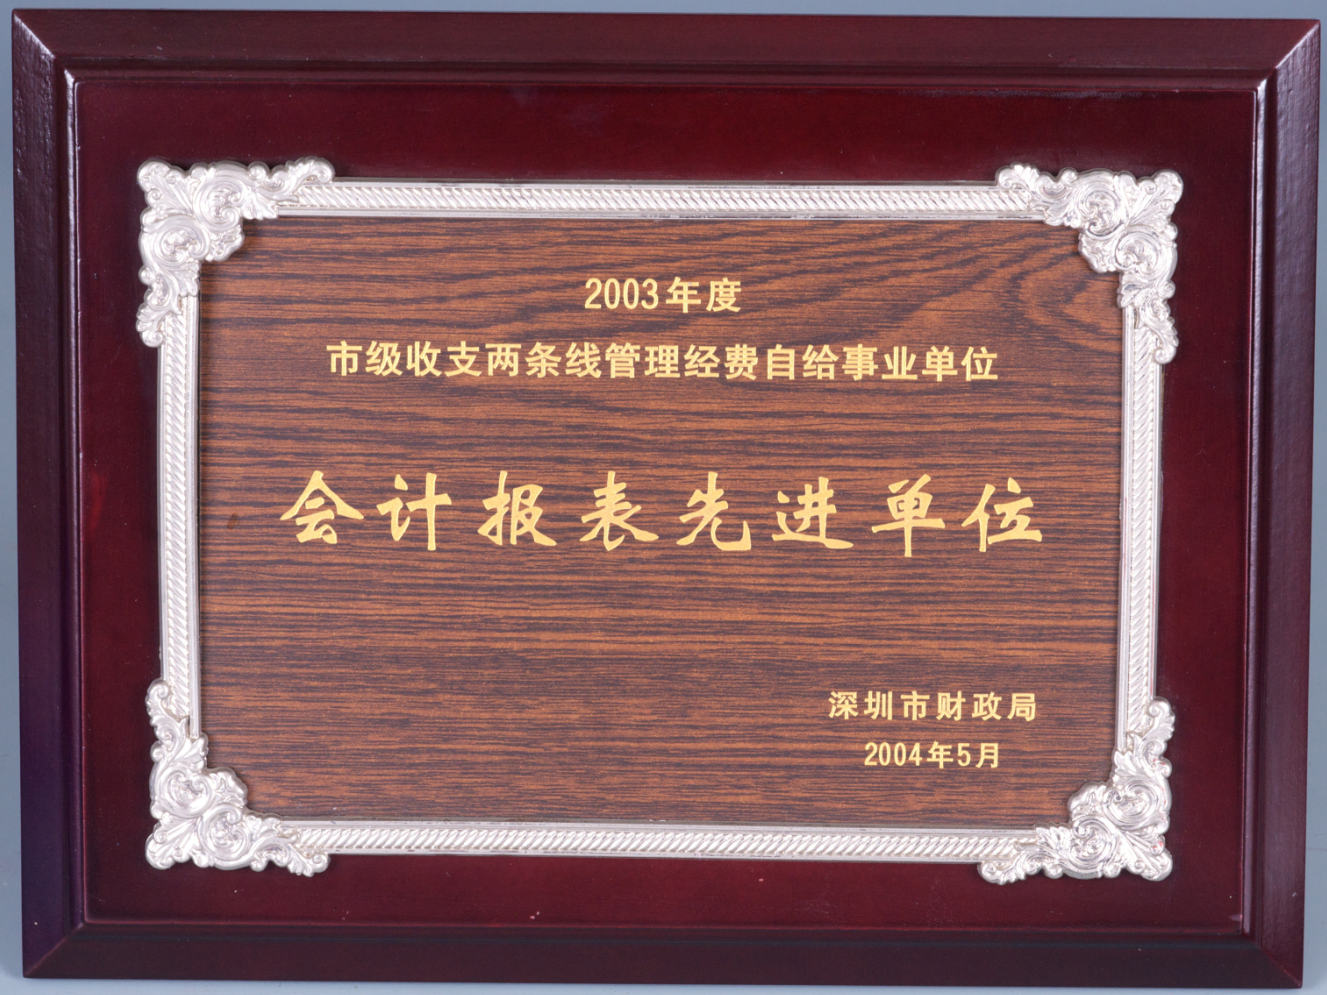 深圳市财政局—2003年度会计报表先进单位